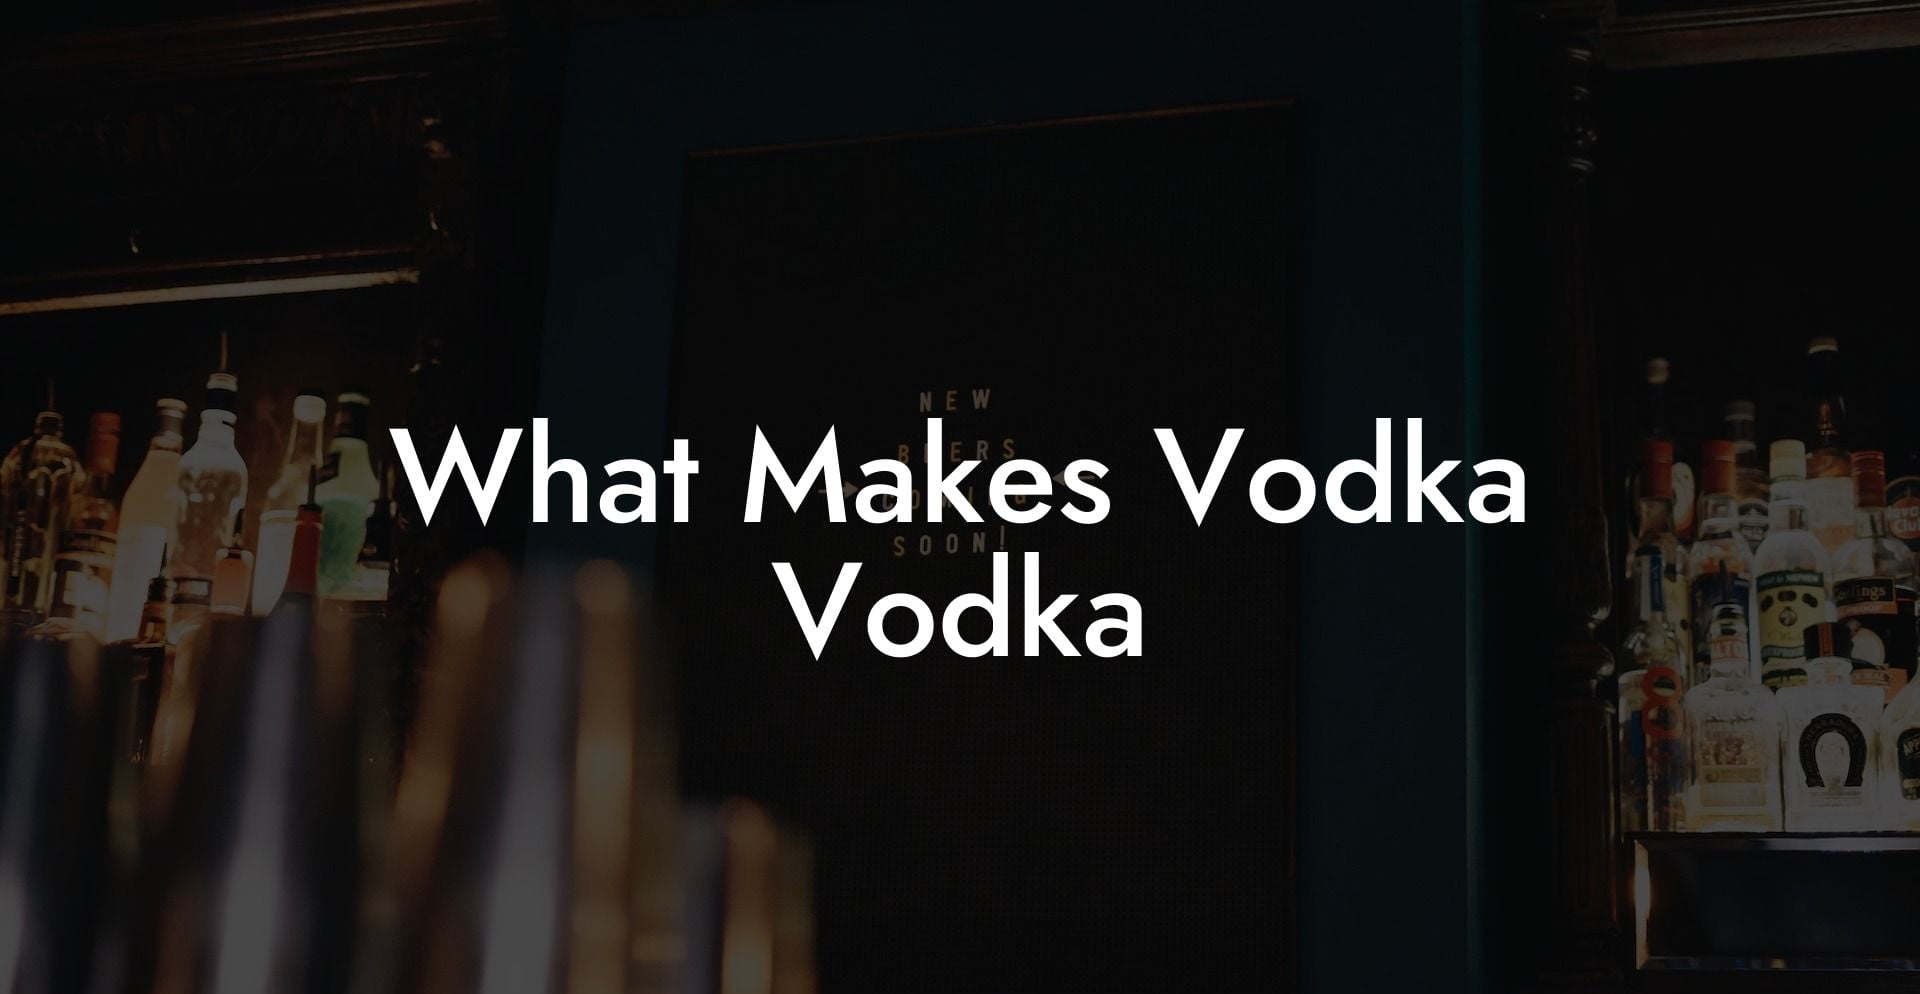 What Makes Vodka Vodka